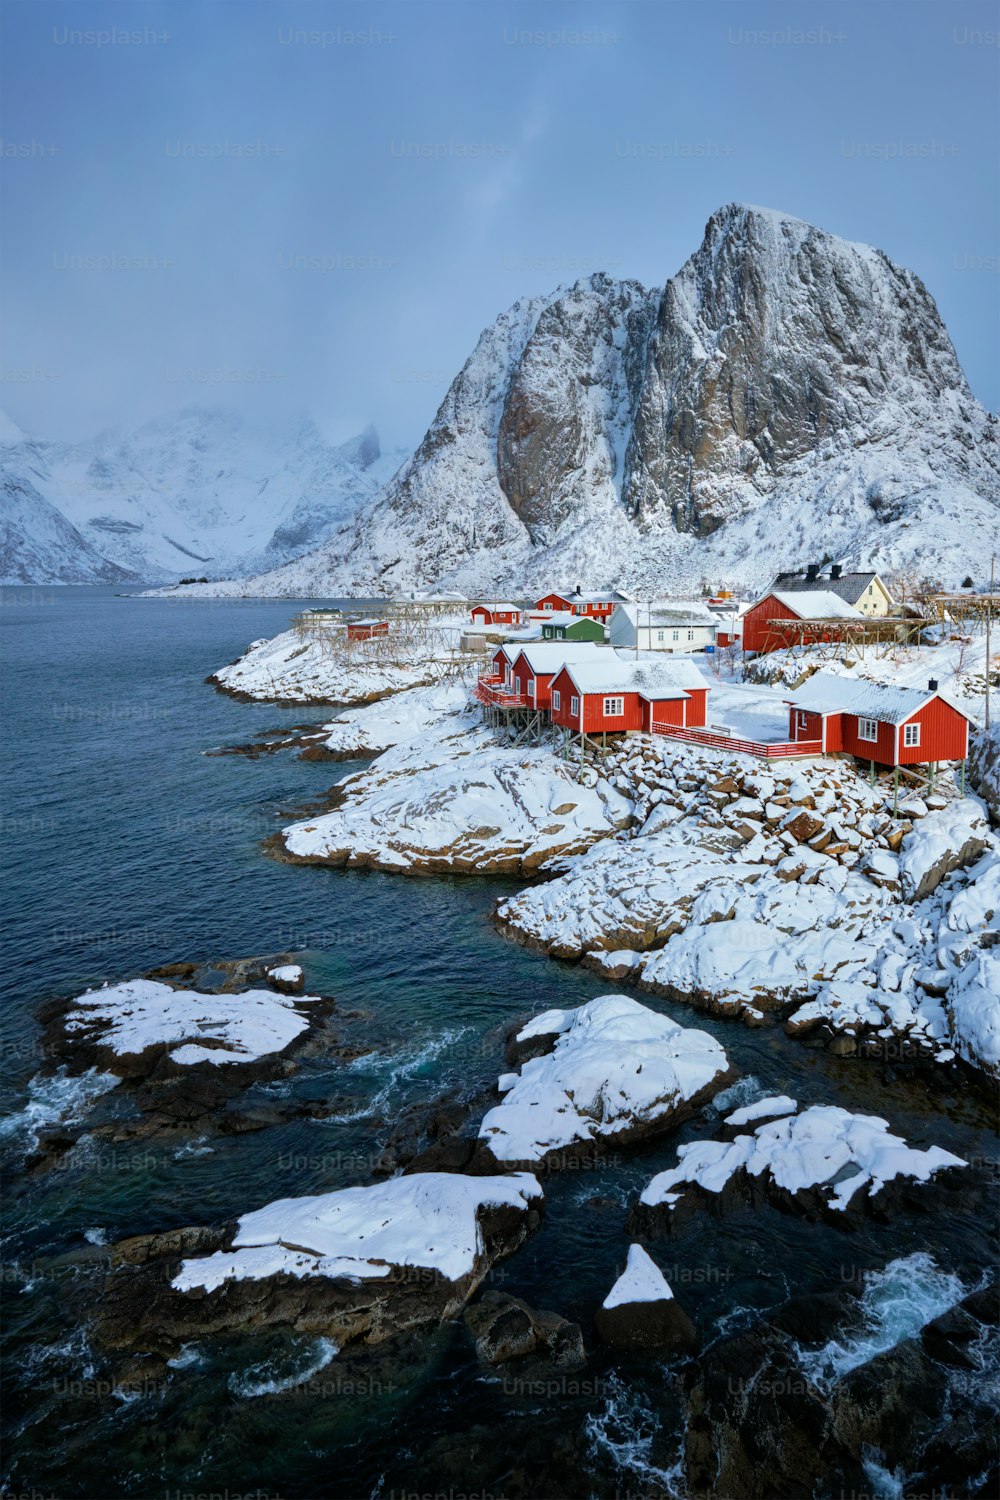 Icônica vila de pescadores de Hamnoy nas Ilhas Lofoten, Noruega, com casas de rorbu vermelho. Com neve caindo no inverno.